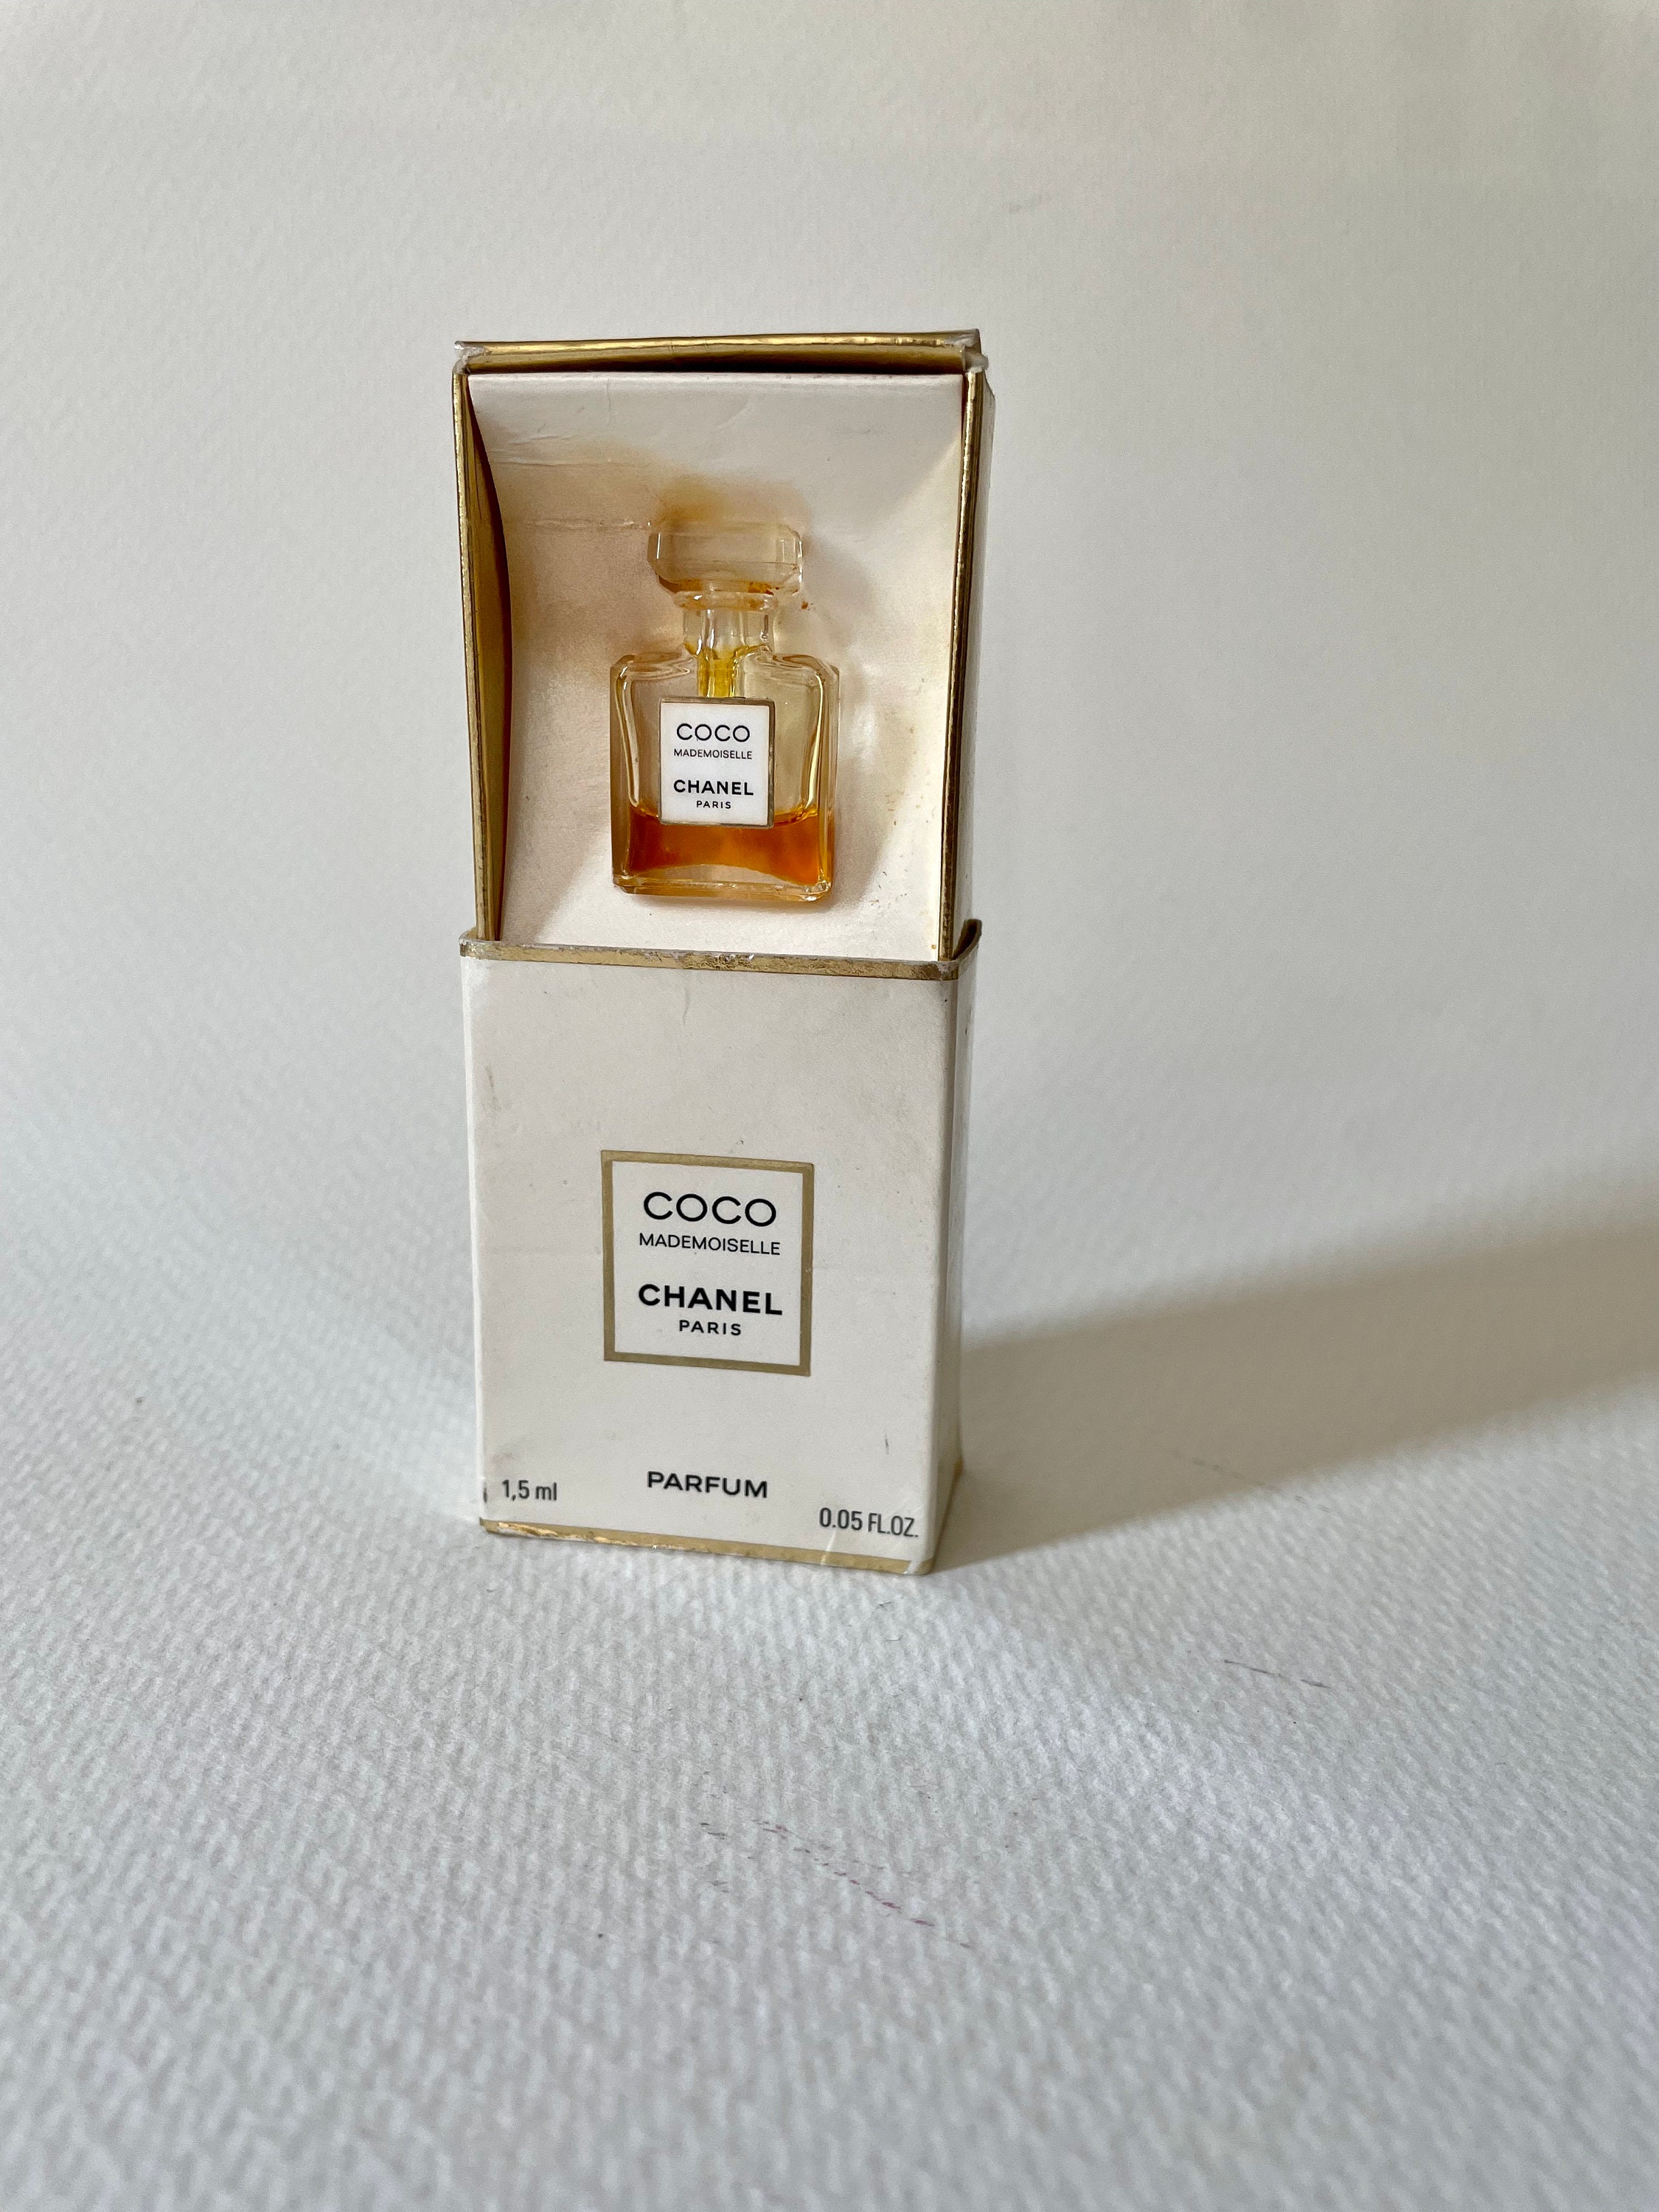 CHANEL JERSEY Eau de Parfum EDP Spray 1.5ml / 0.05oz Sample Scent